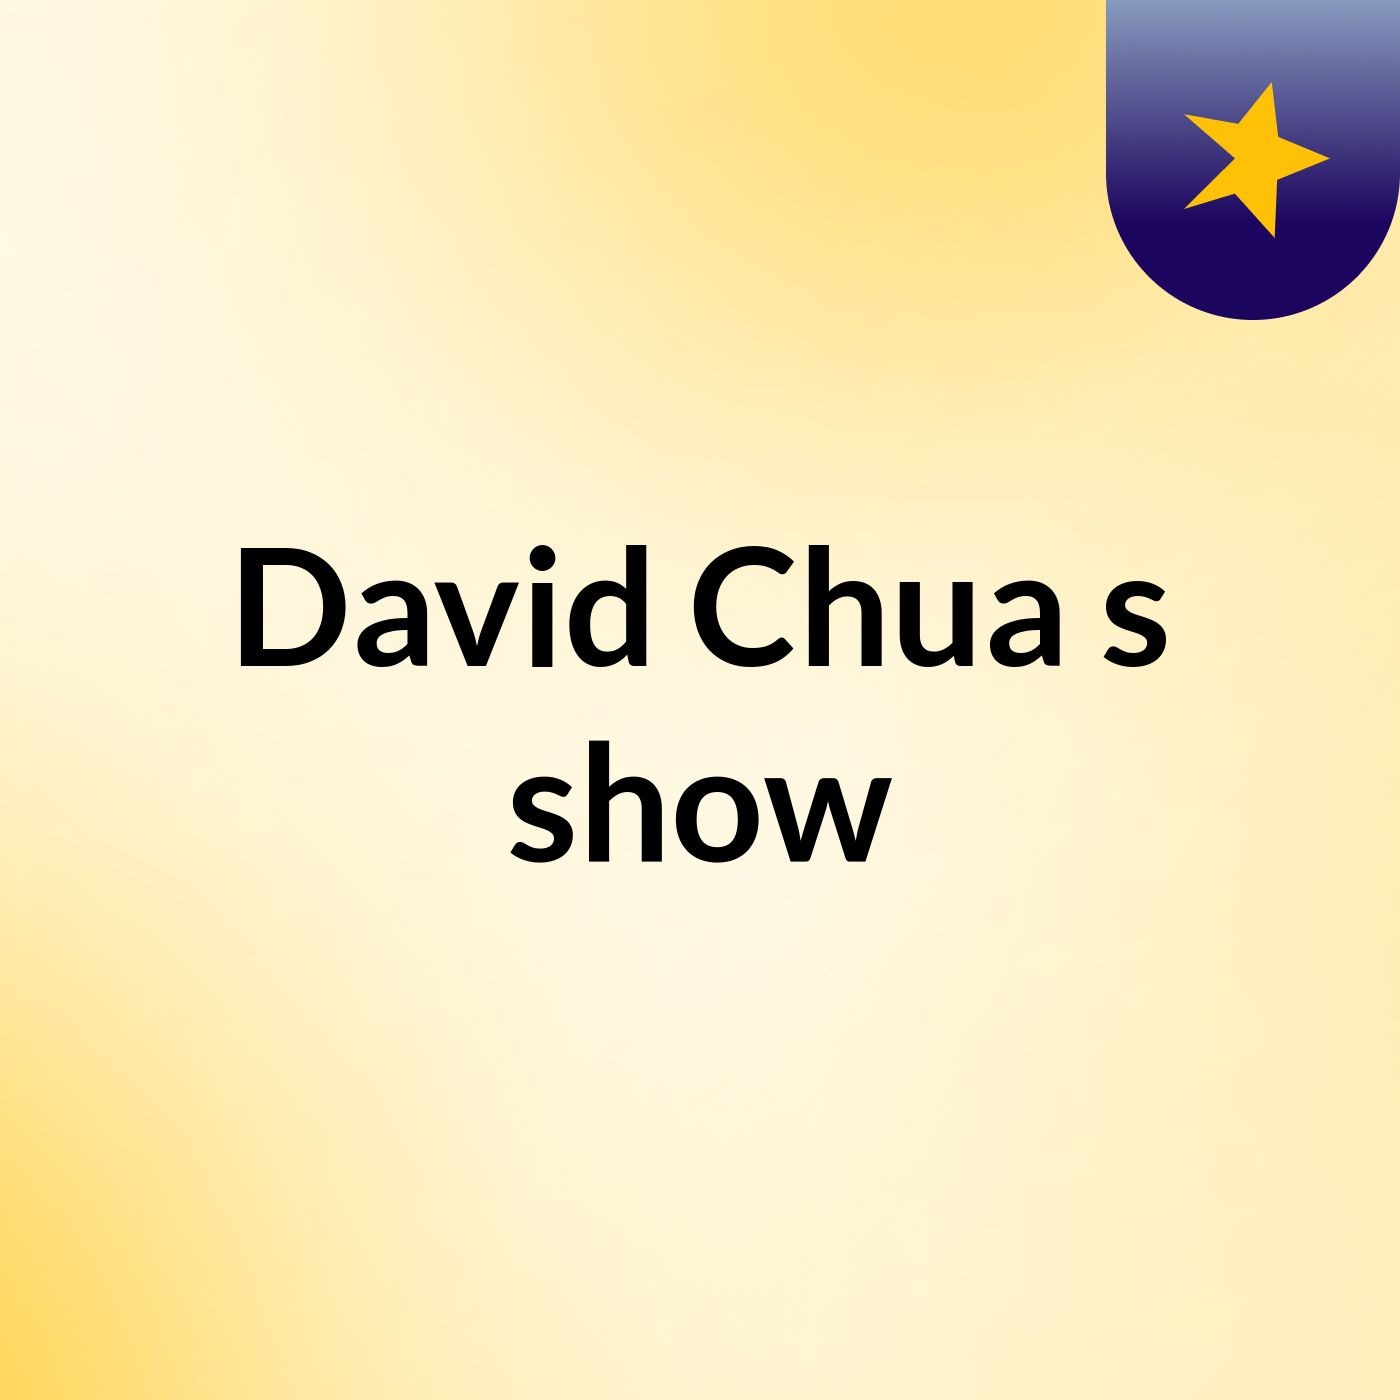 David Chua's show